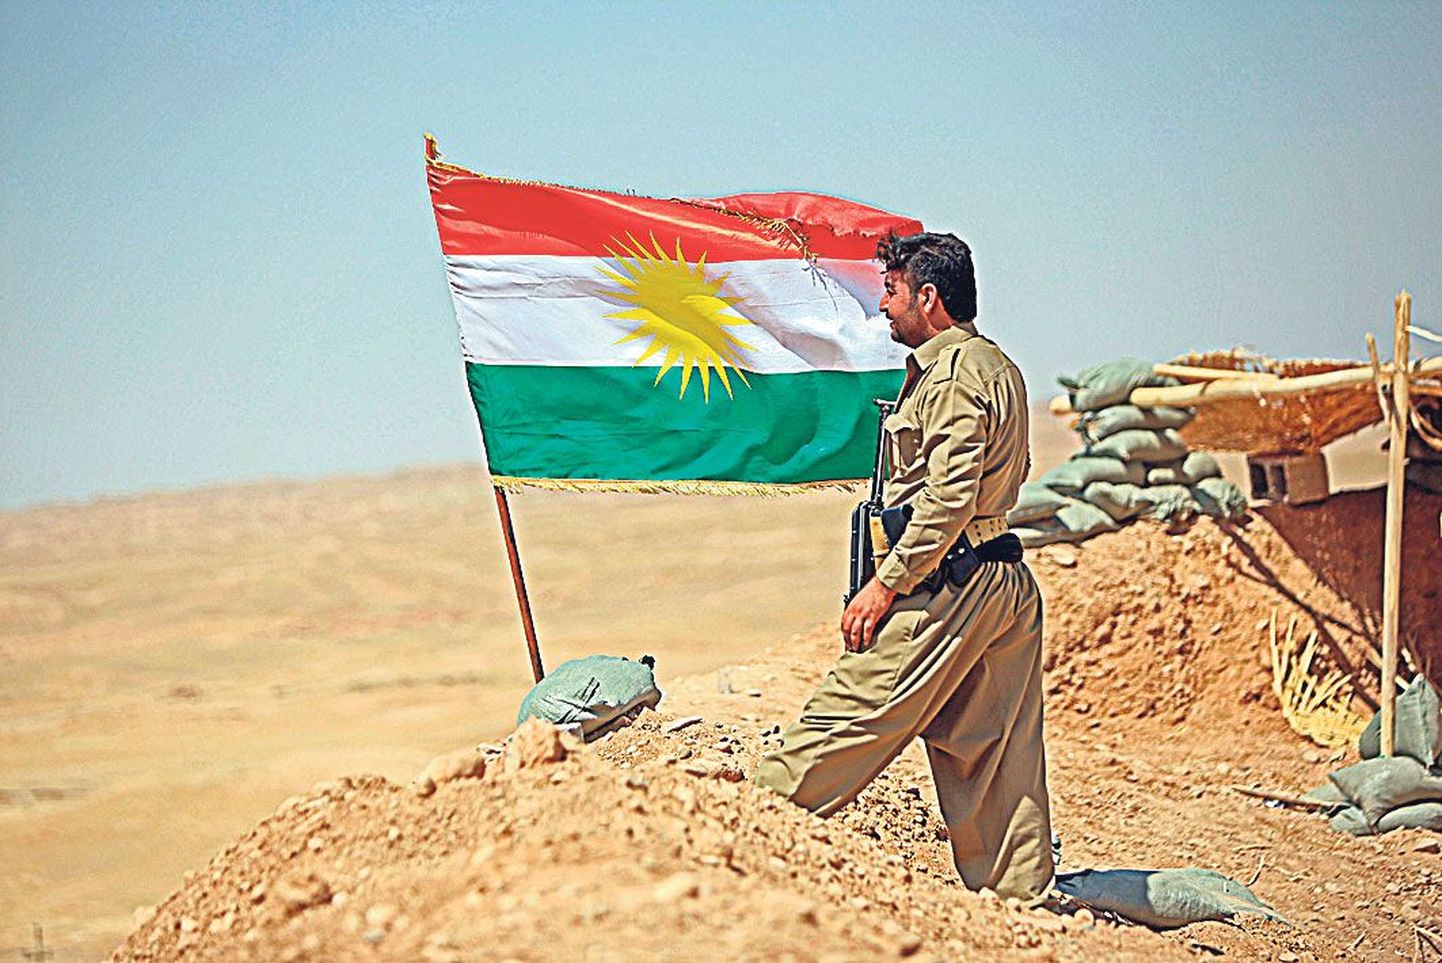 Pešmerga võitleja Kurdistani lipu taustal.